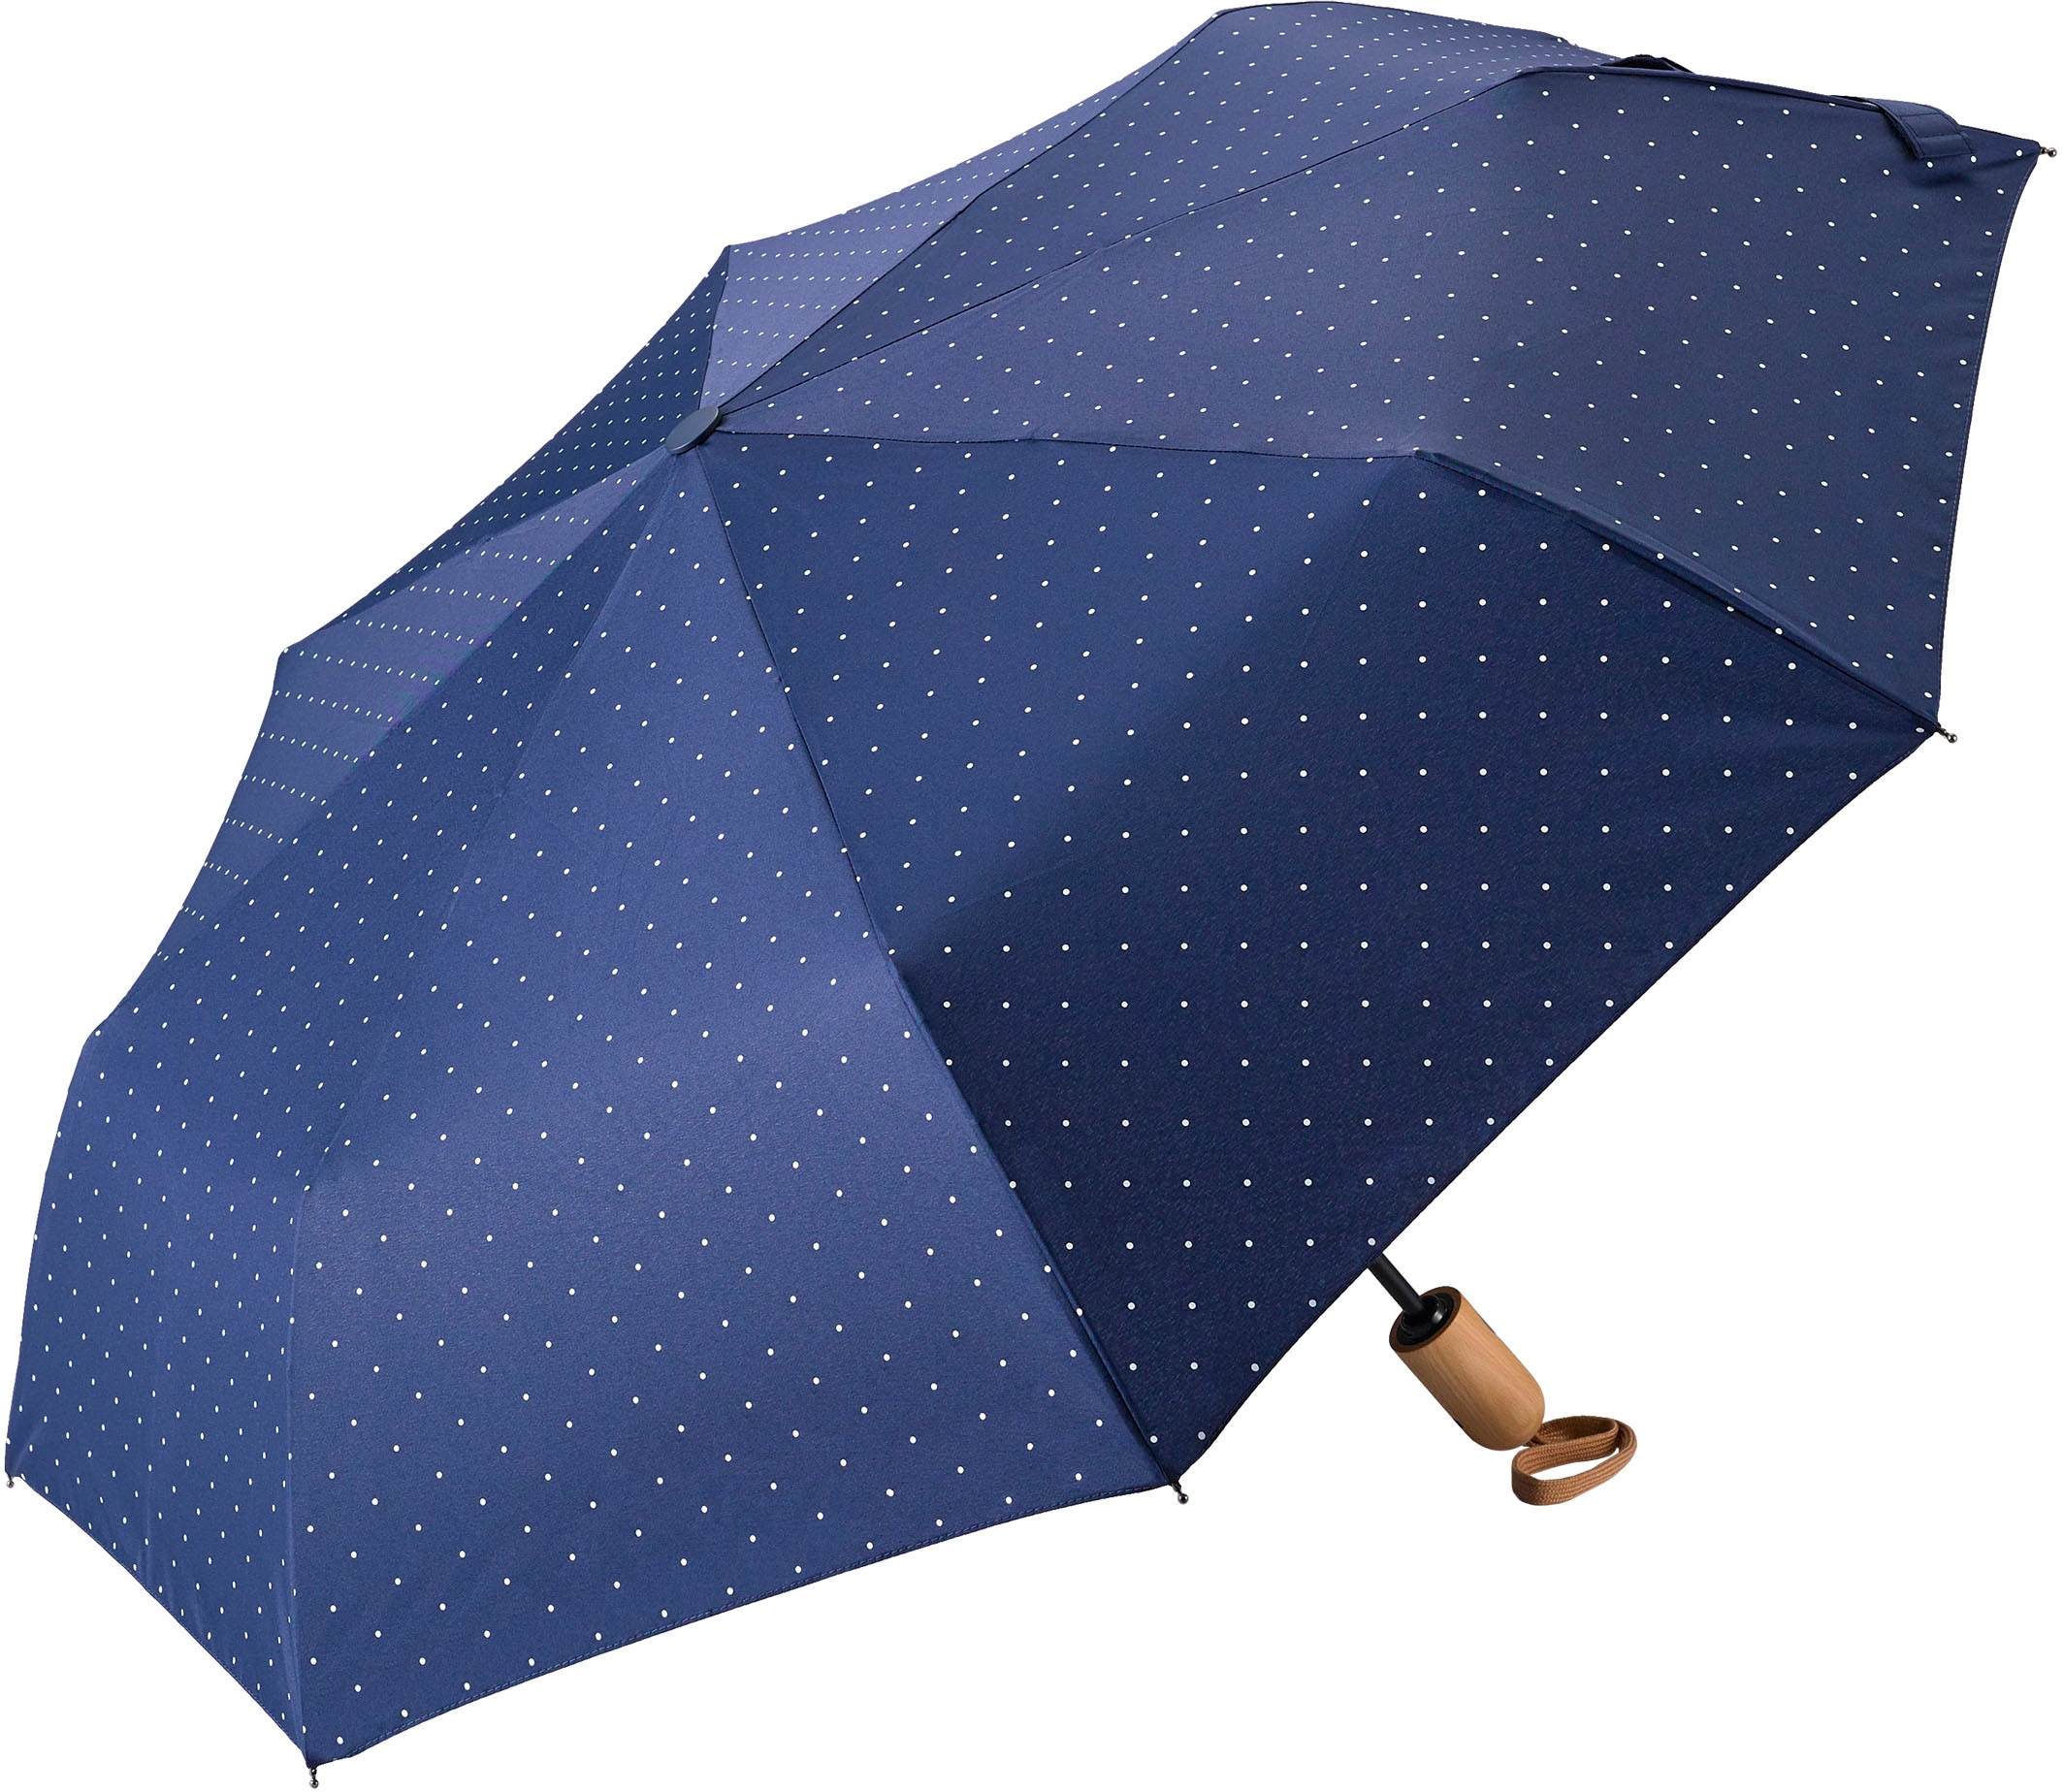 Taschenregenschirm »Umwelt-Taschenschirm, marine, Punkte weiß«, kompakte Größe,...